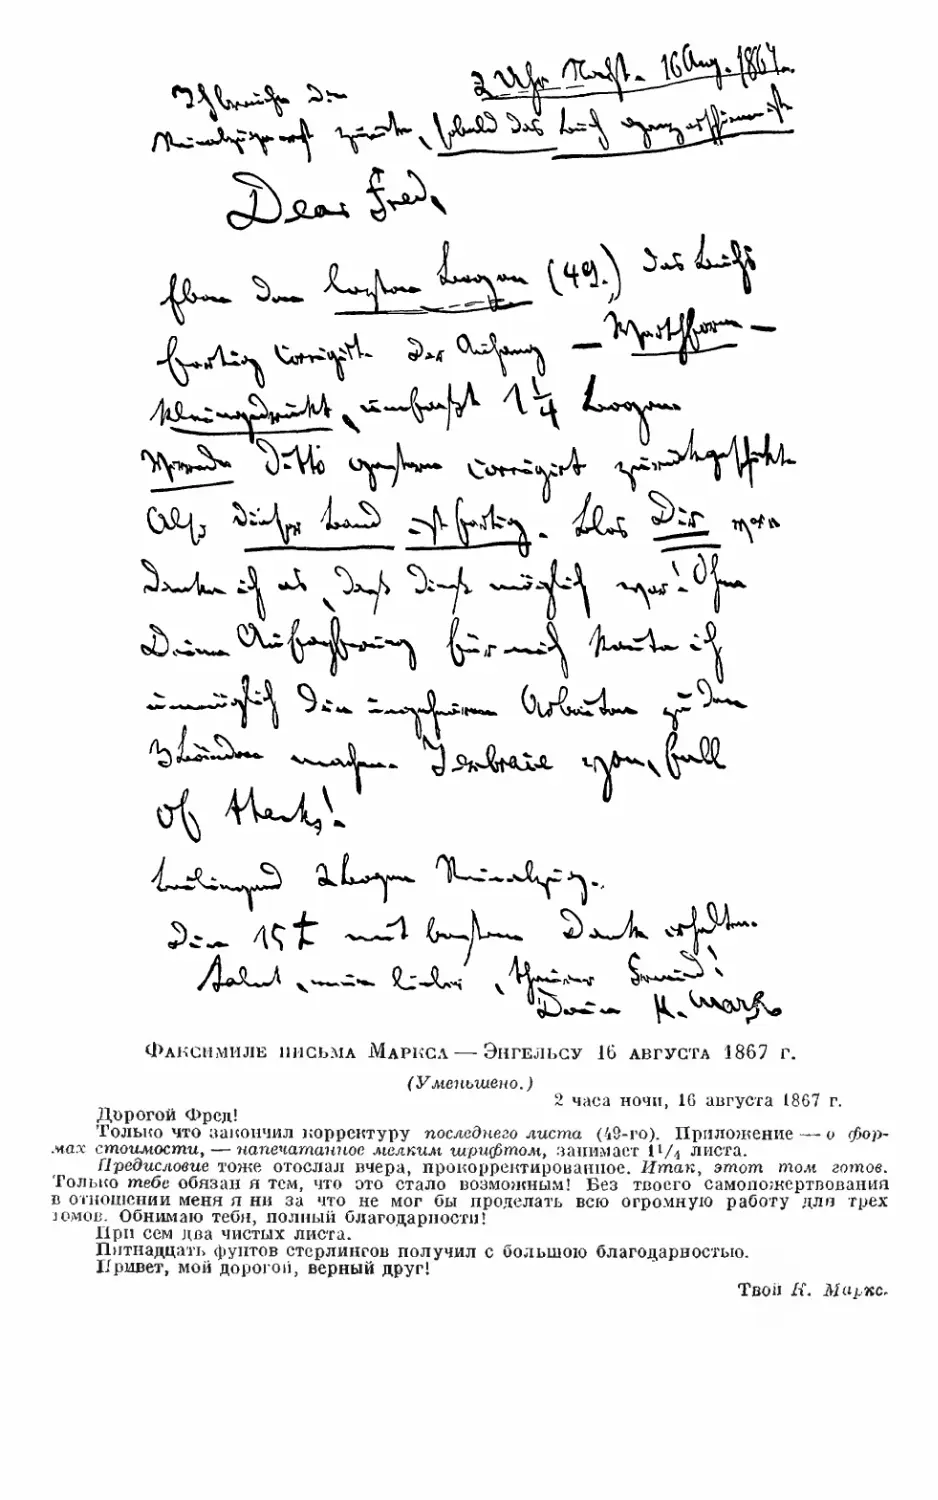 Факсимиле письма Маркса к Энгельсу 16 августа 1867 г.